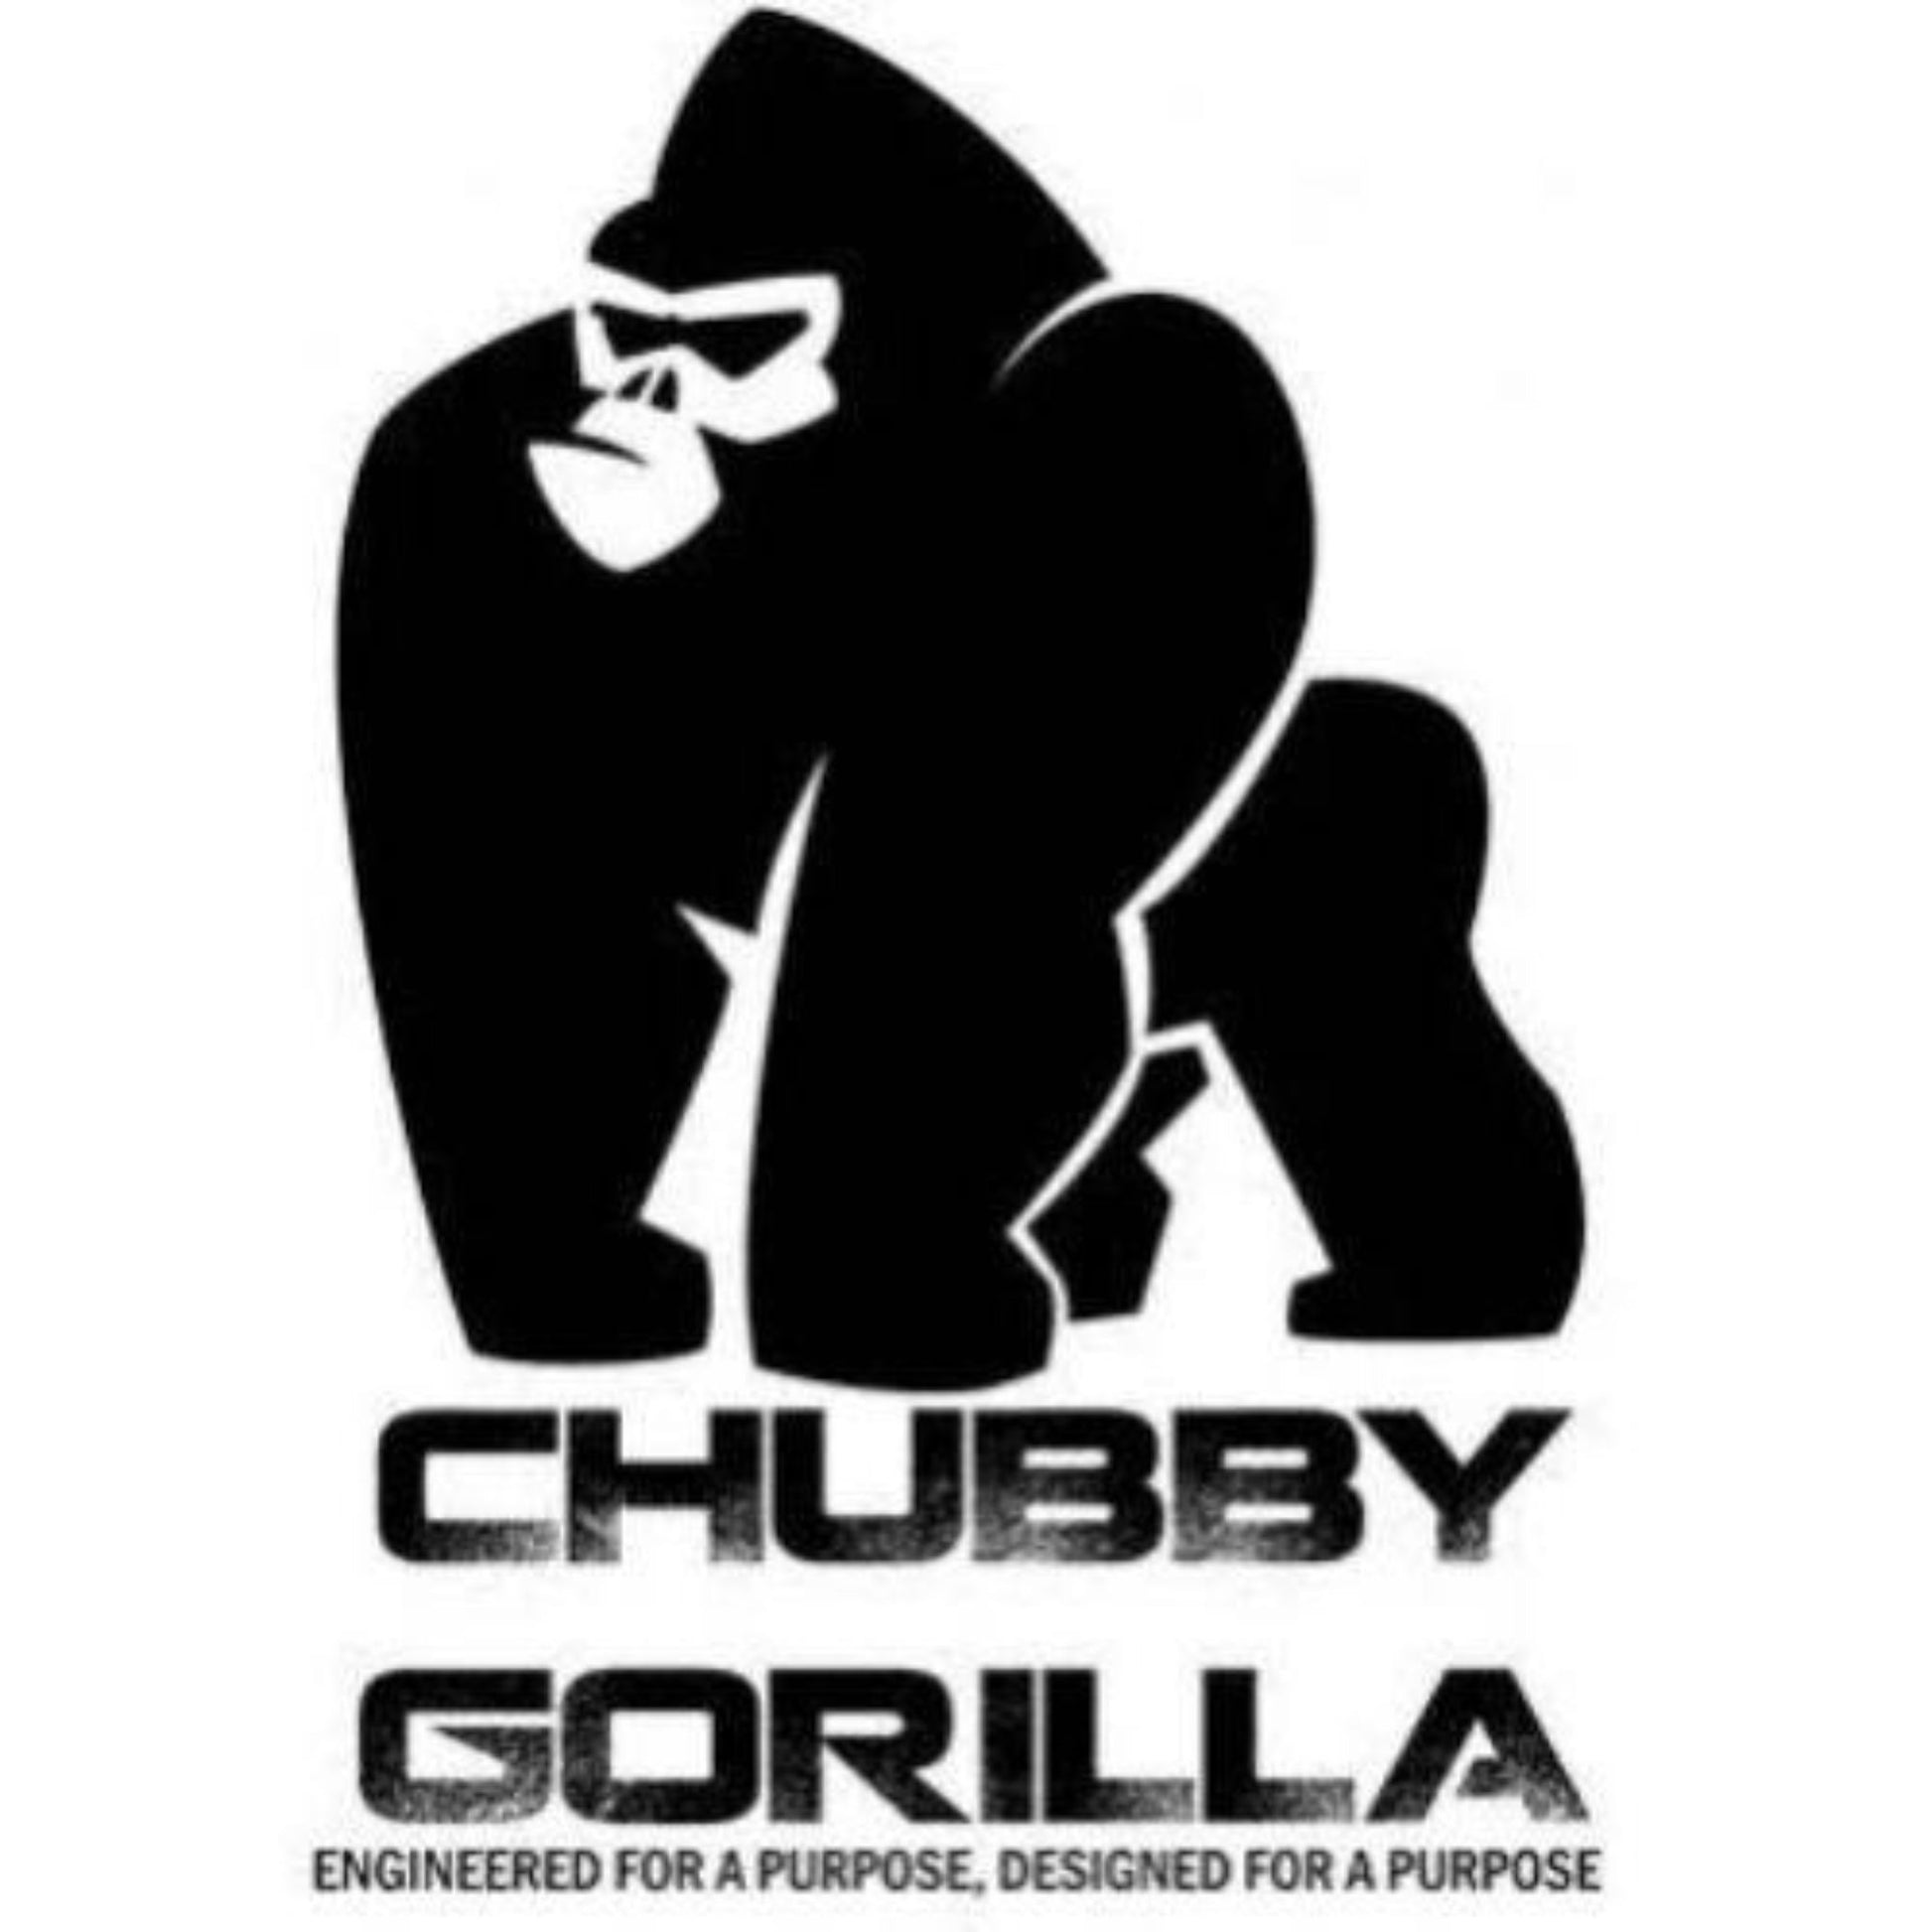 Authentic Chubby Gorilla V3 Empty Bottles logo